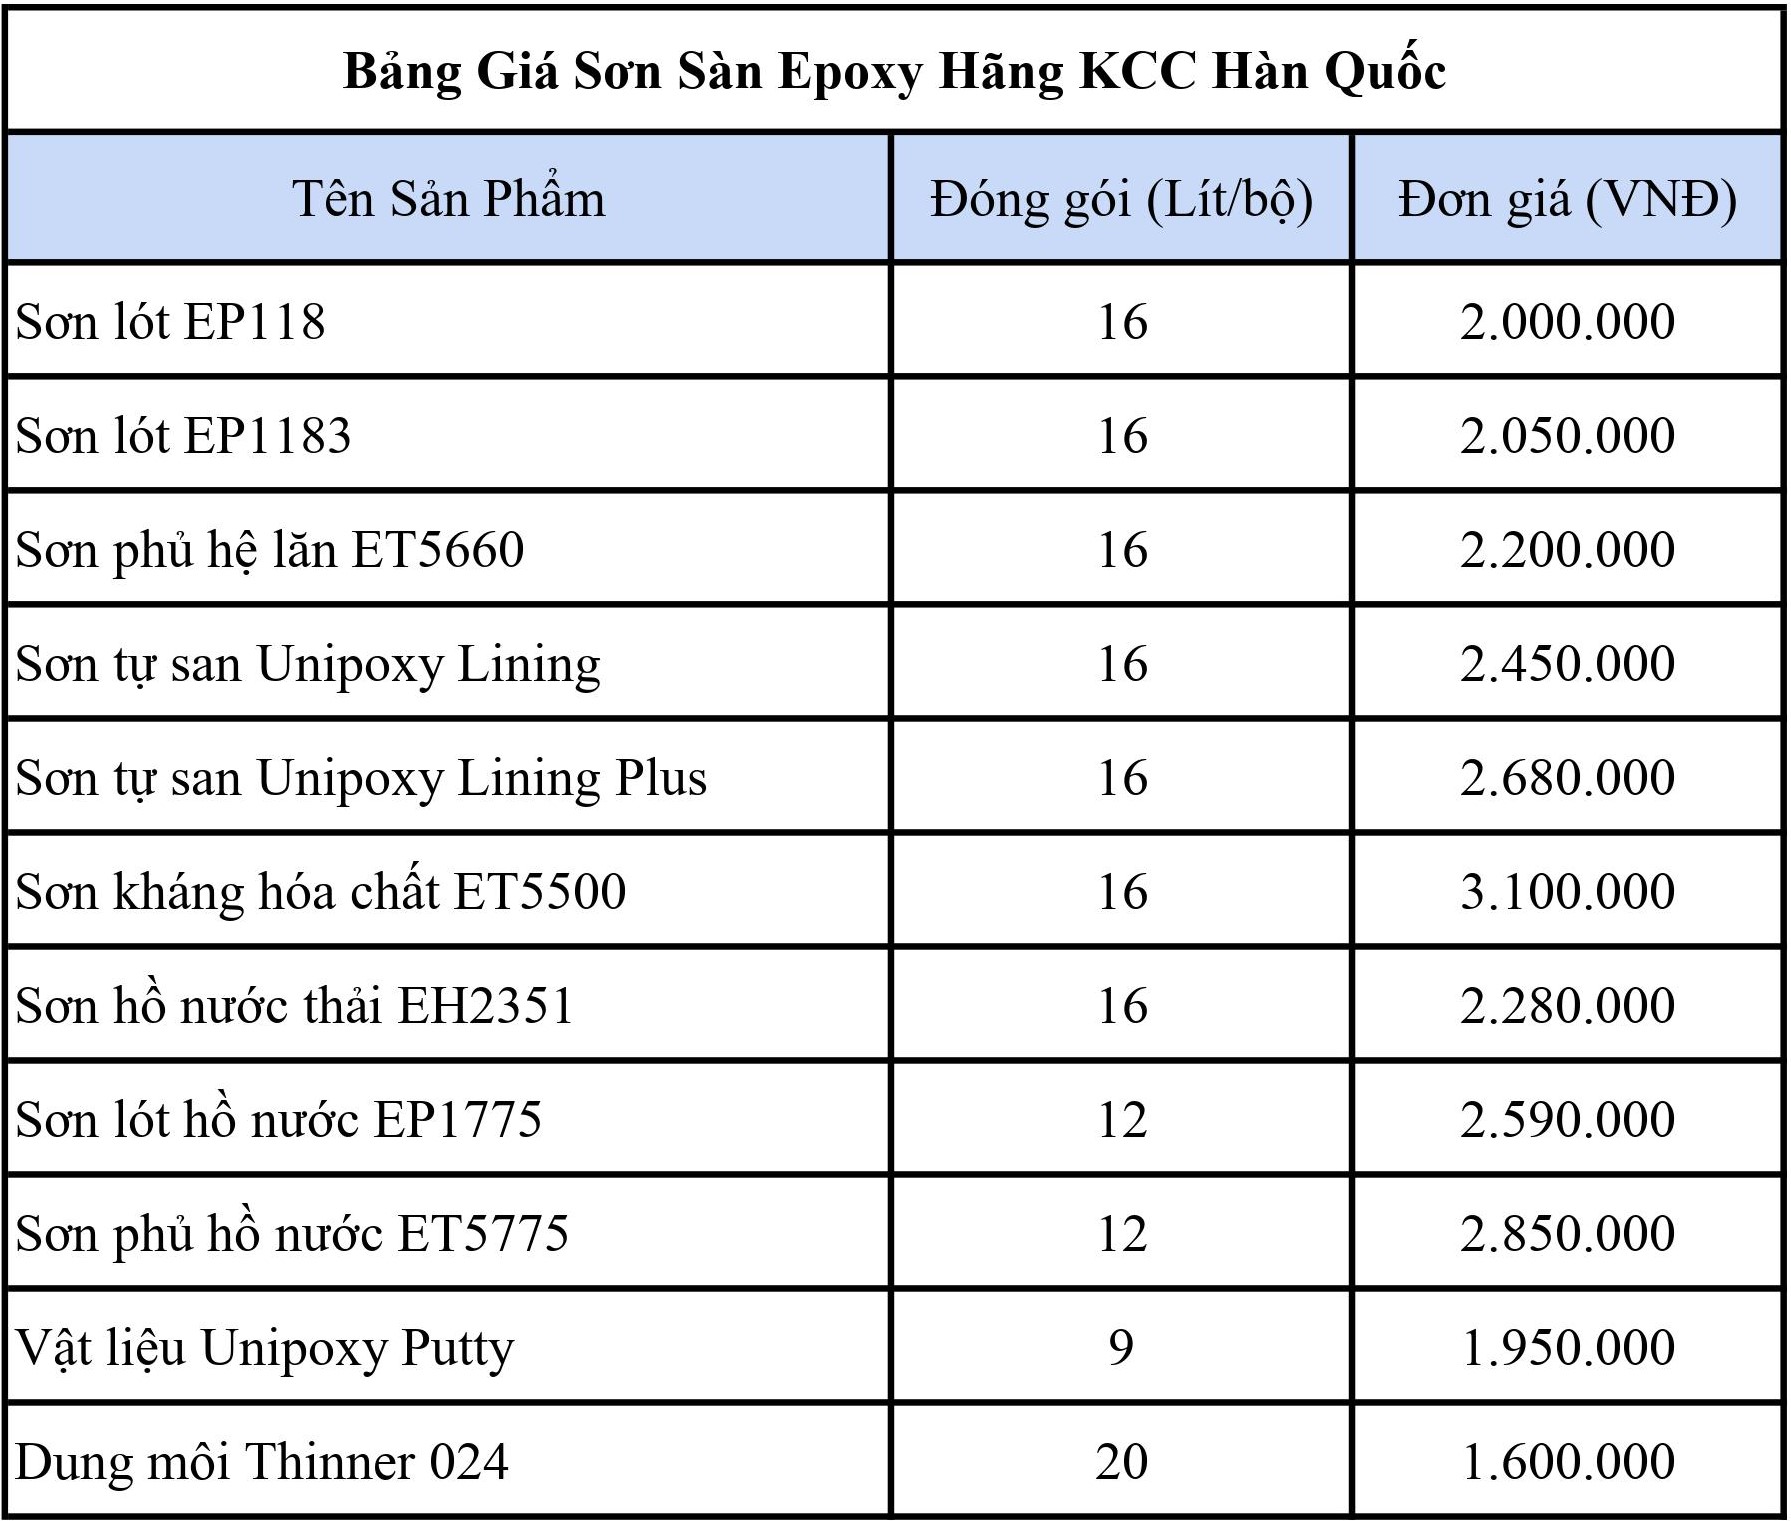 Báo giá sơn epoxy KCC là bao nhiêu tiền một kg?